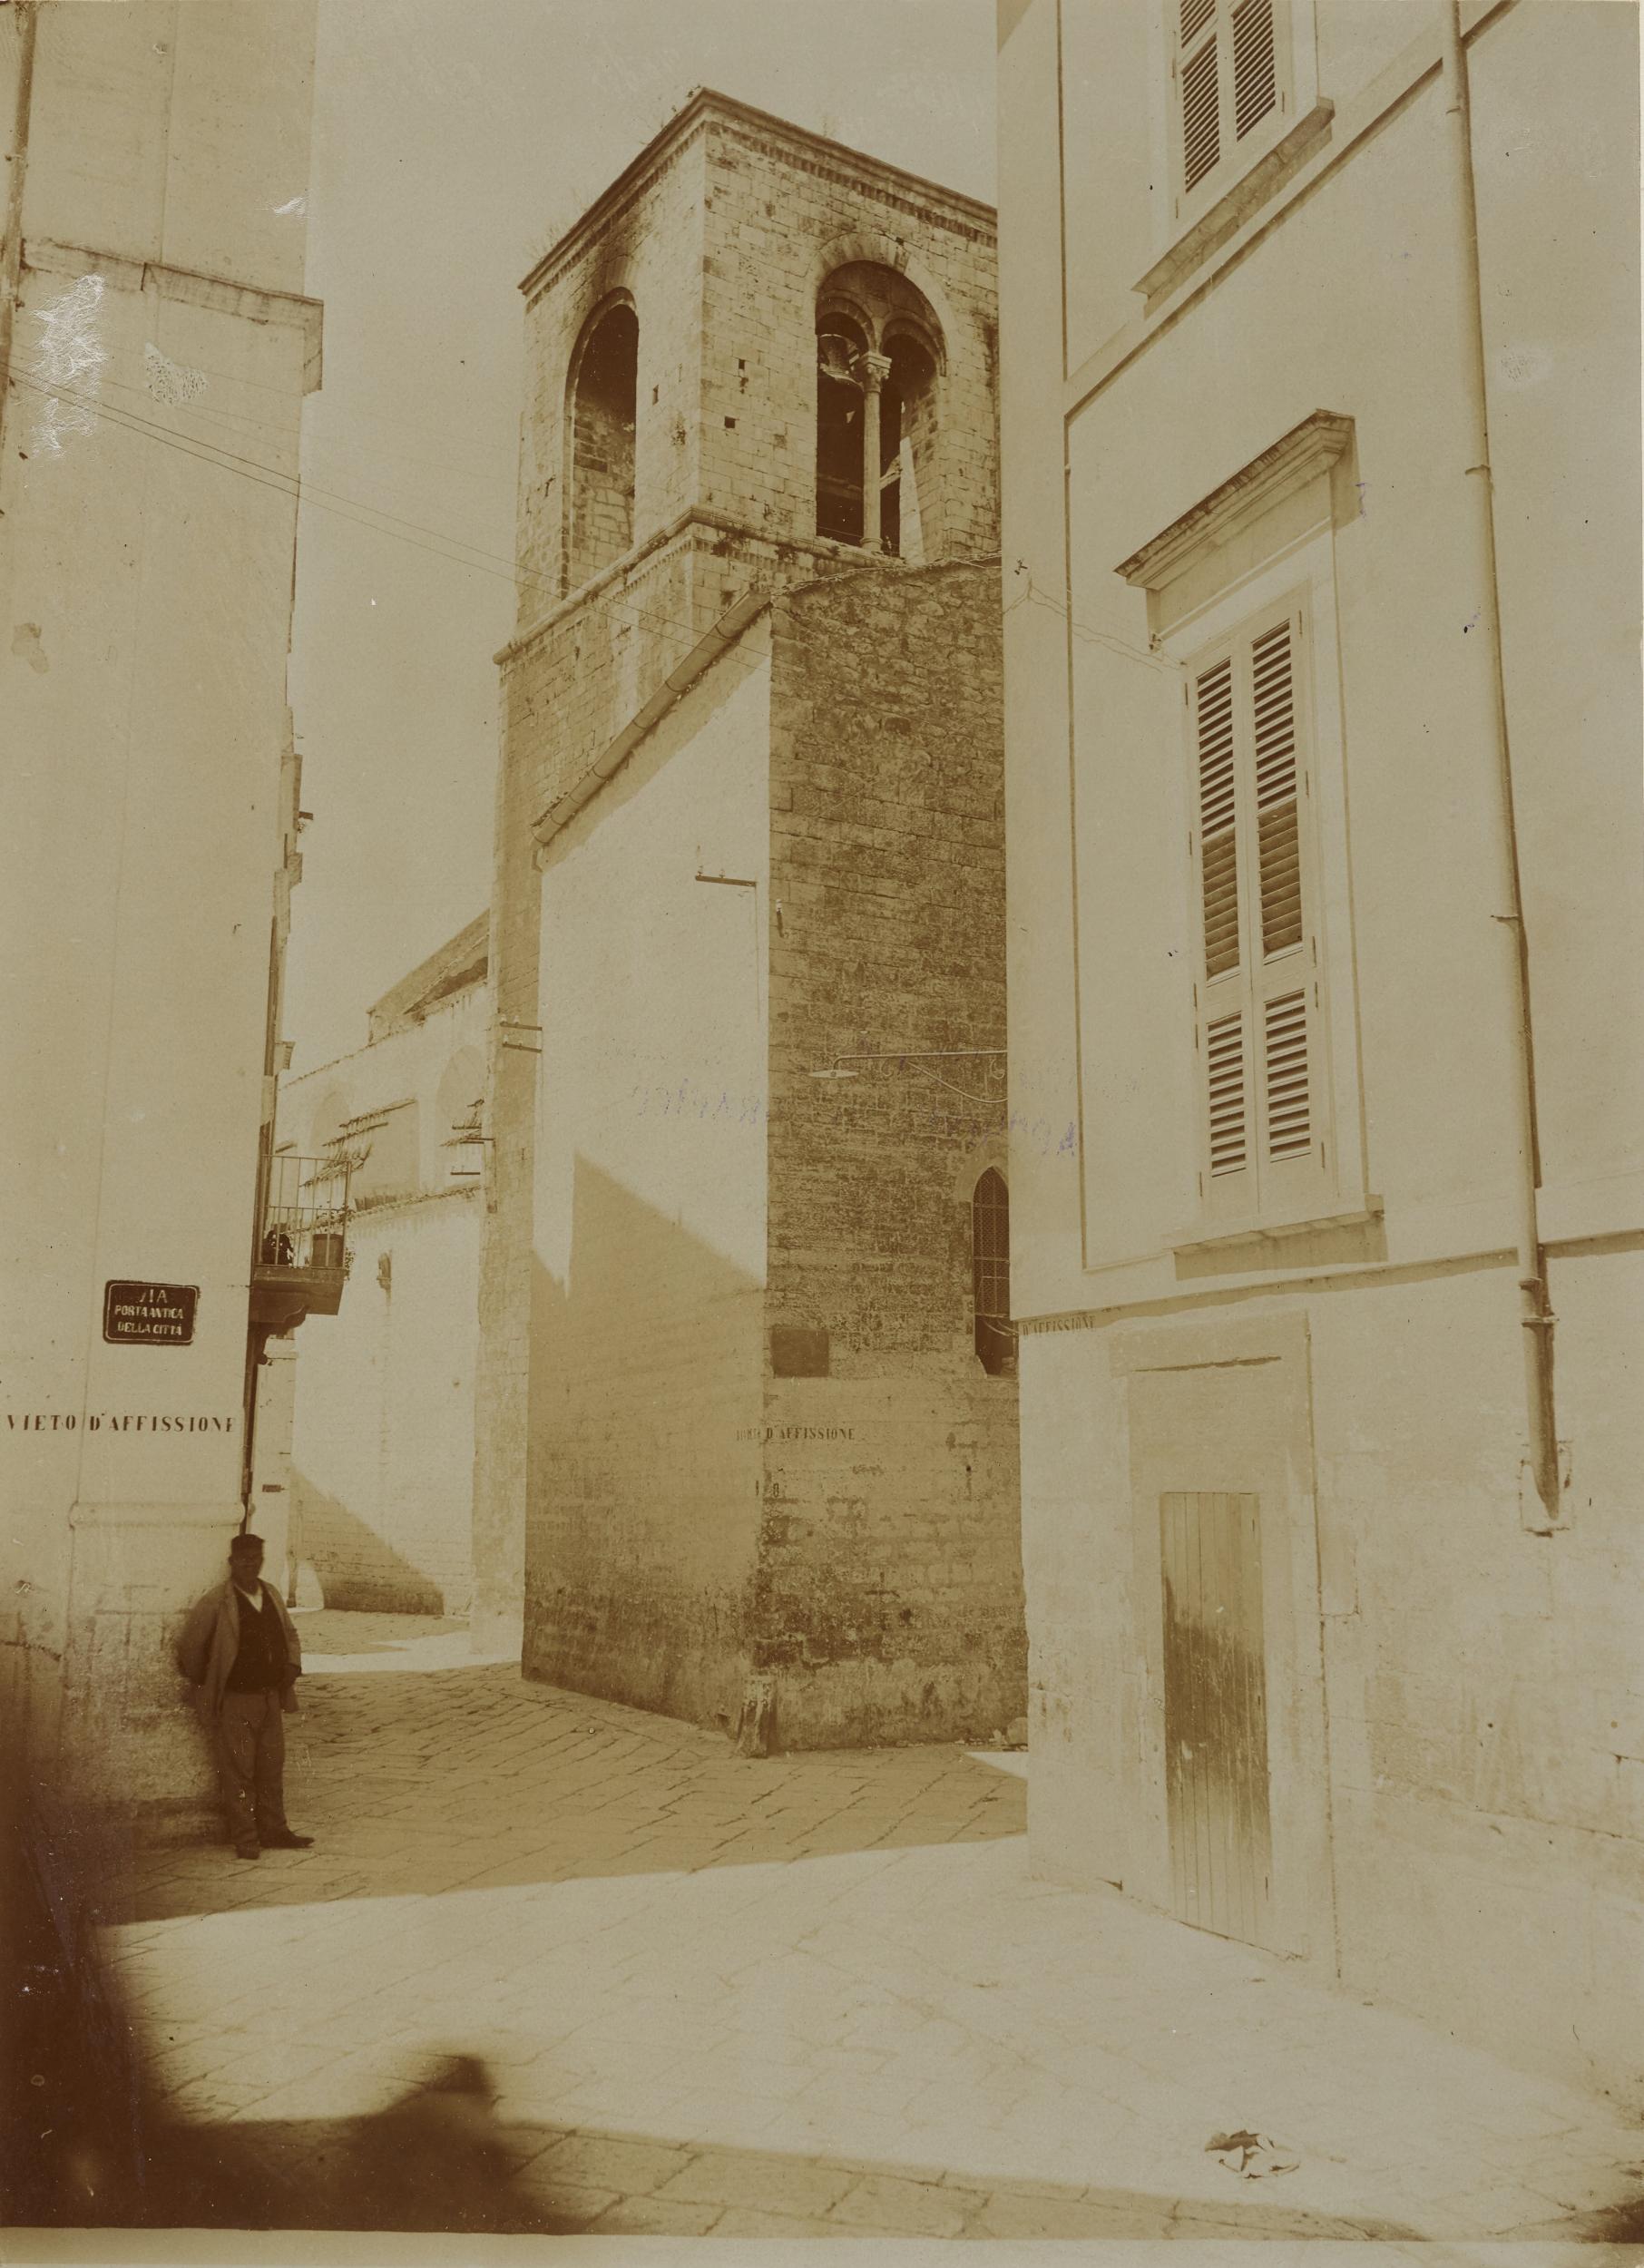 Fotografo non identificato, Conversano - Cattedrale, interno, arco trionfale e abside, dopo incendio del 1911, 1901-1910, aristotipo, MPI155334